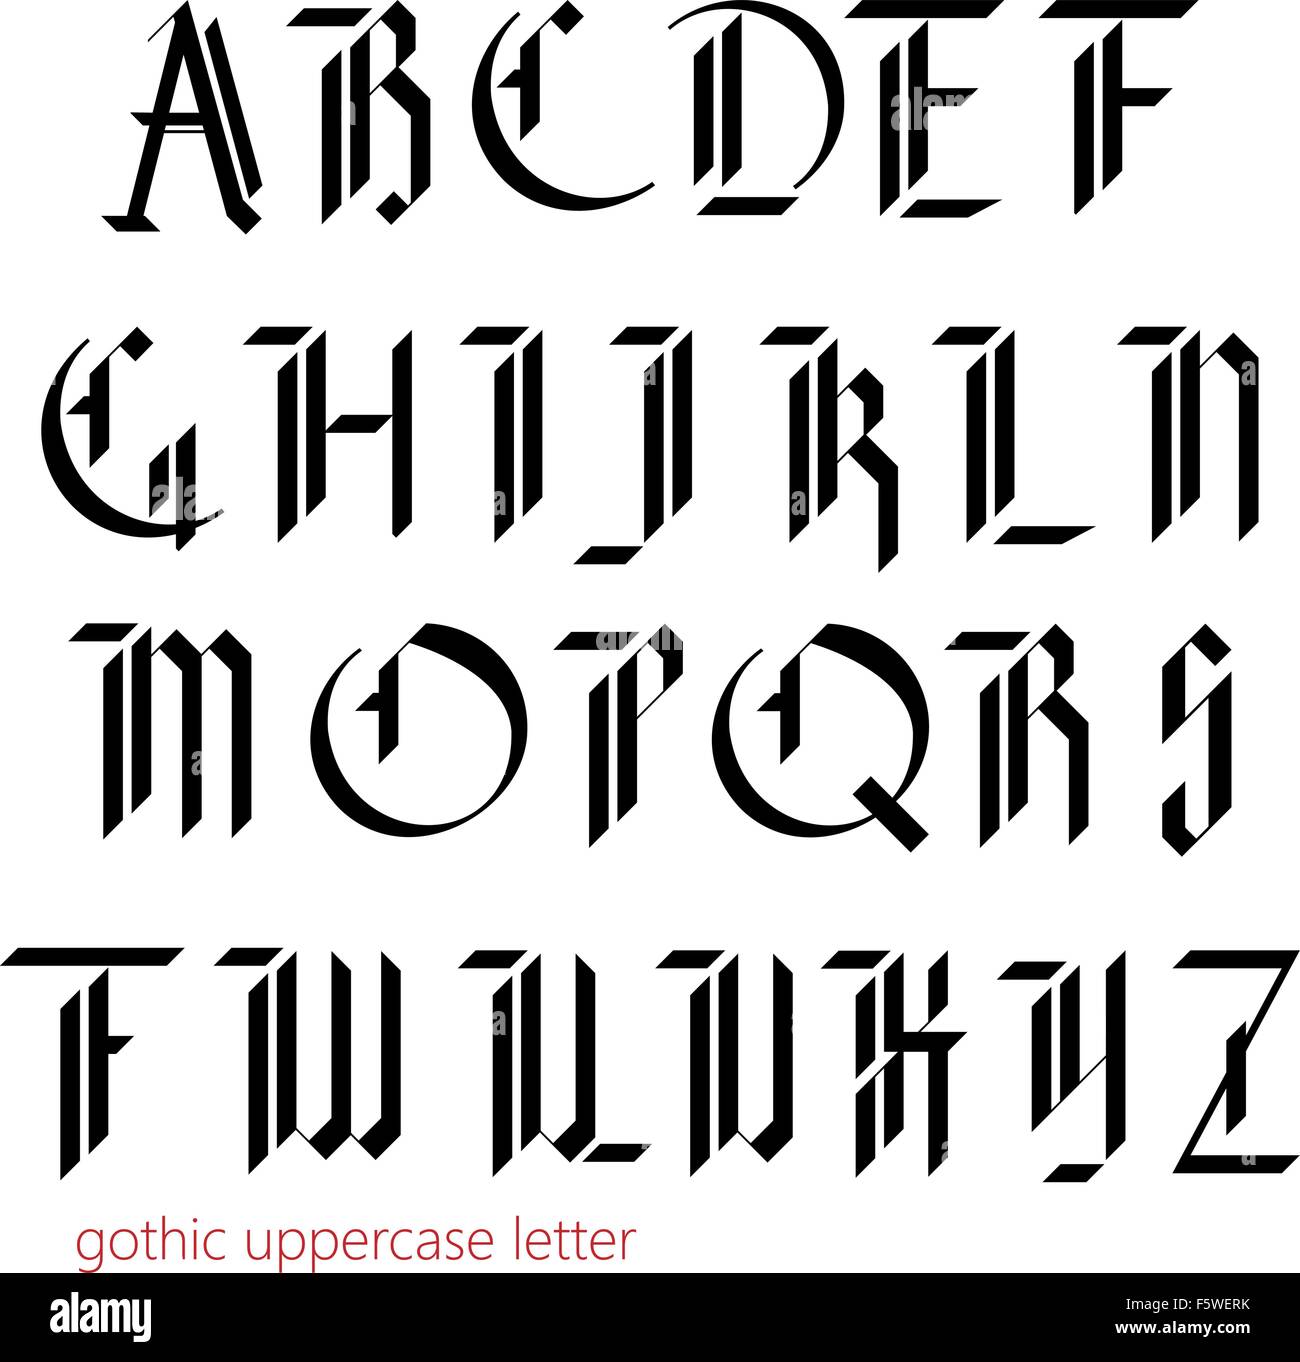 Blackletter moderno font gotico. Illustrazione Vettoriale